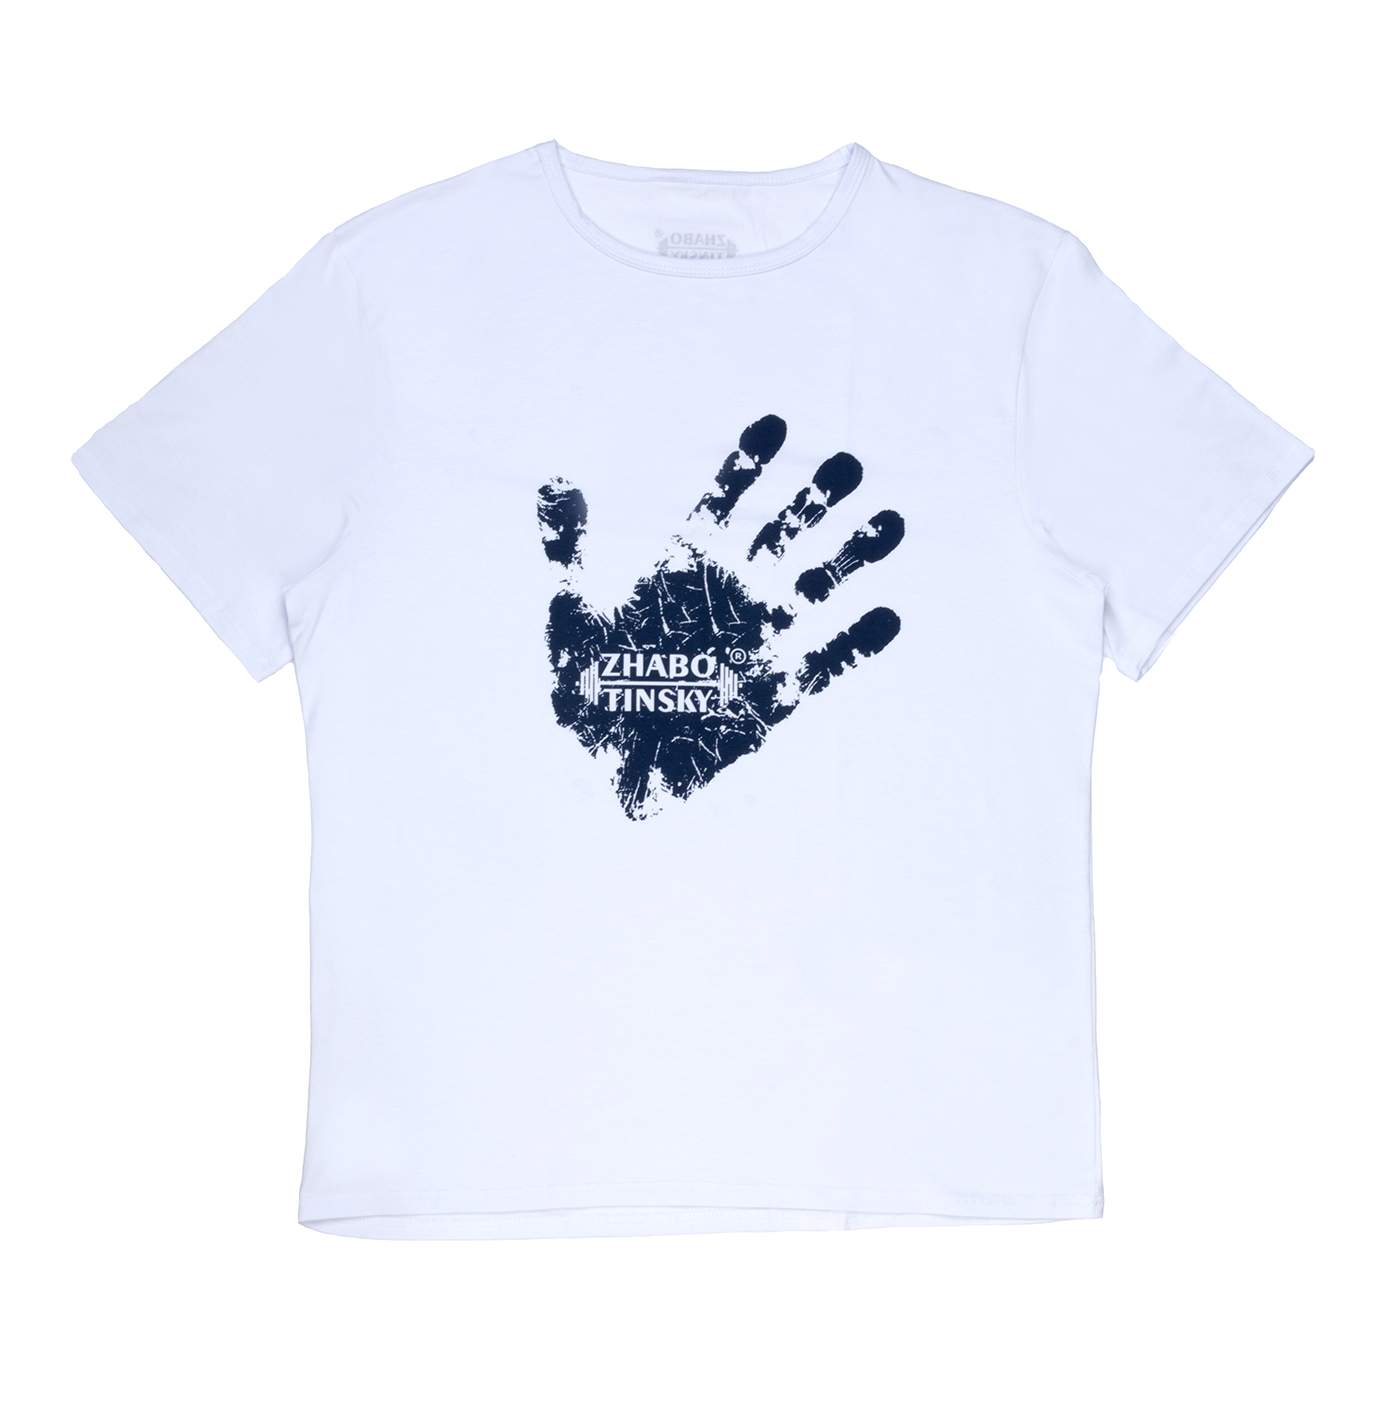 Men's T-shirt Winner's hand, white, S